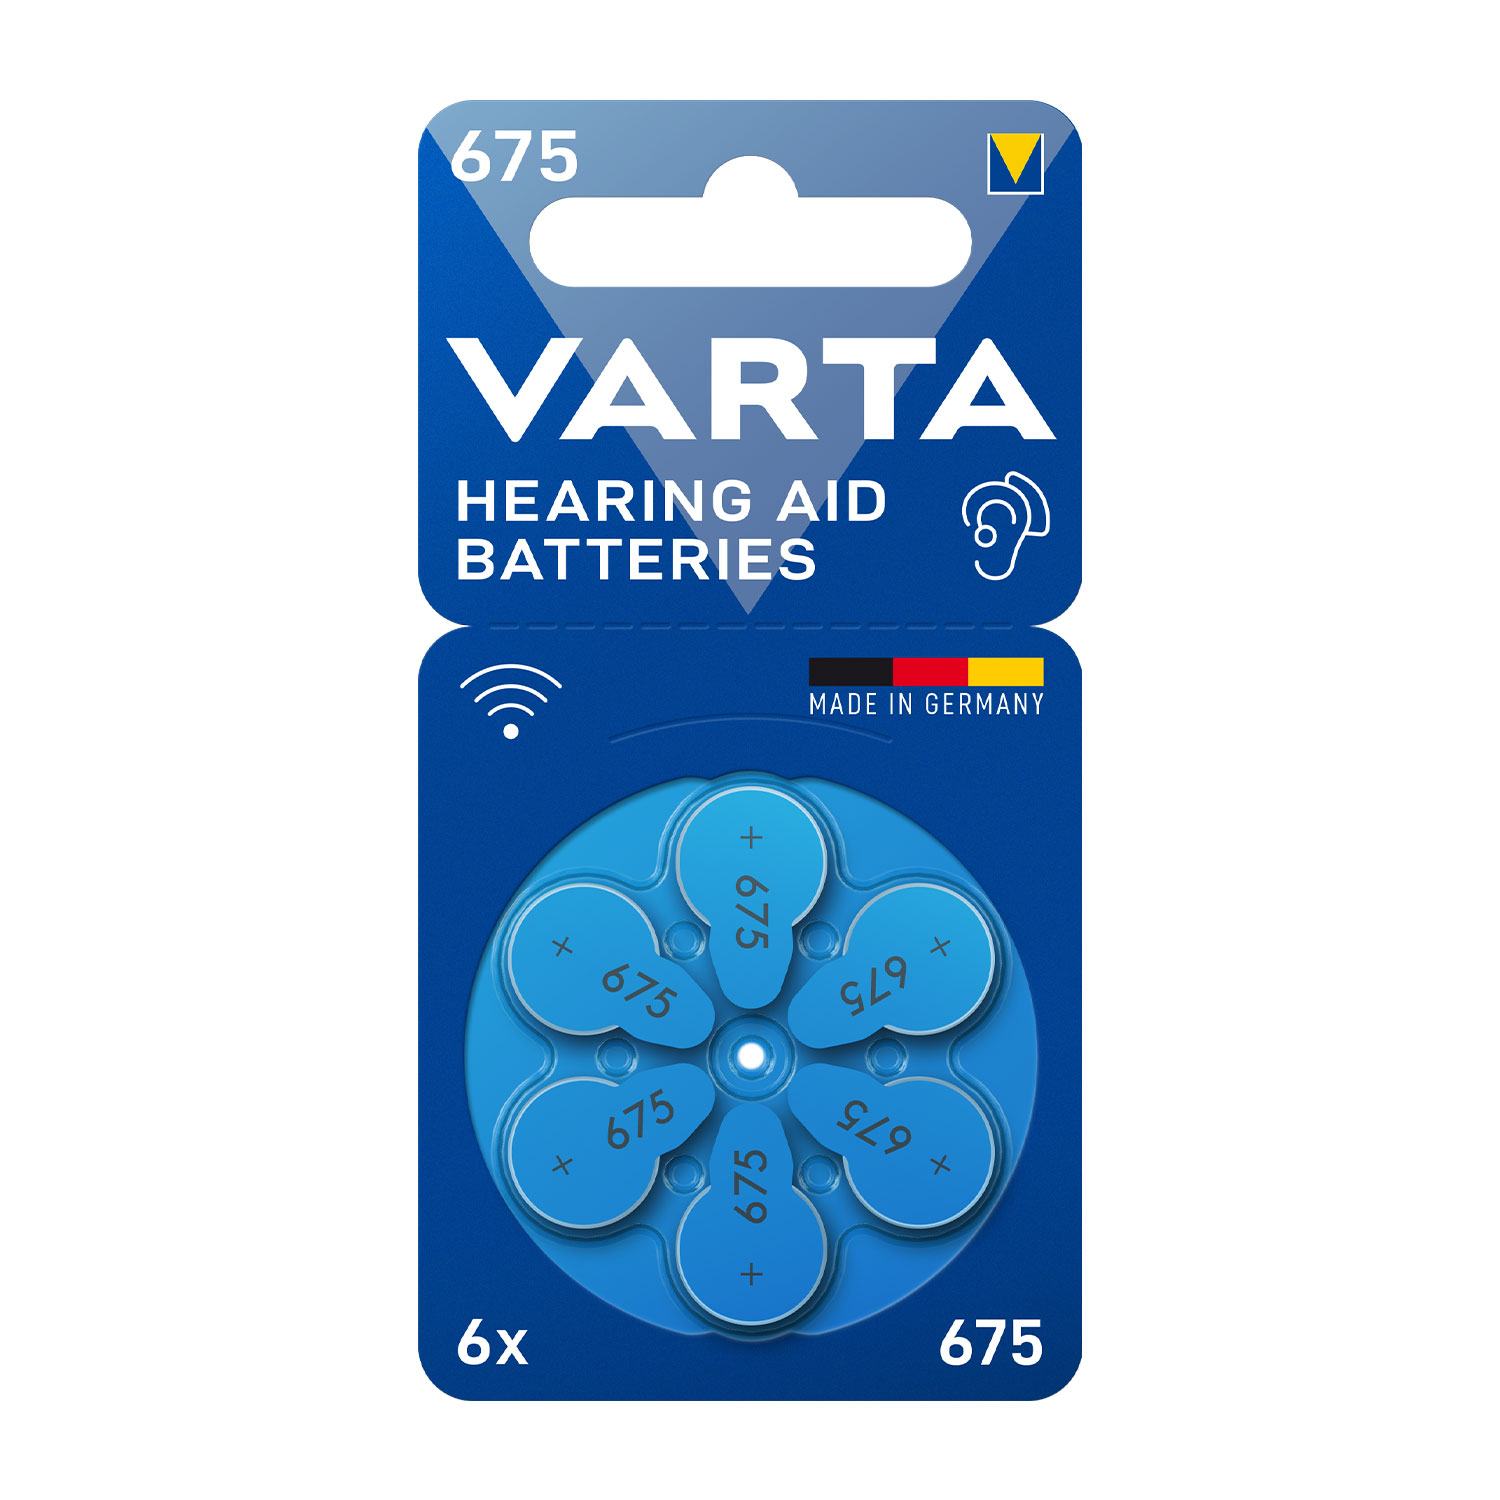 Varta 675 hearing aid battery